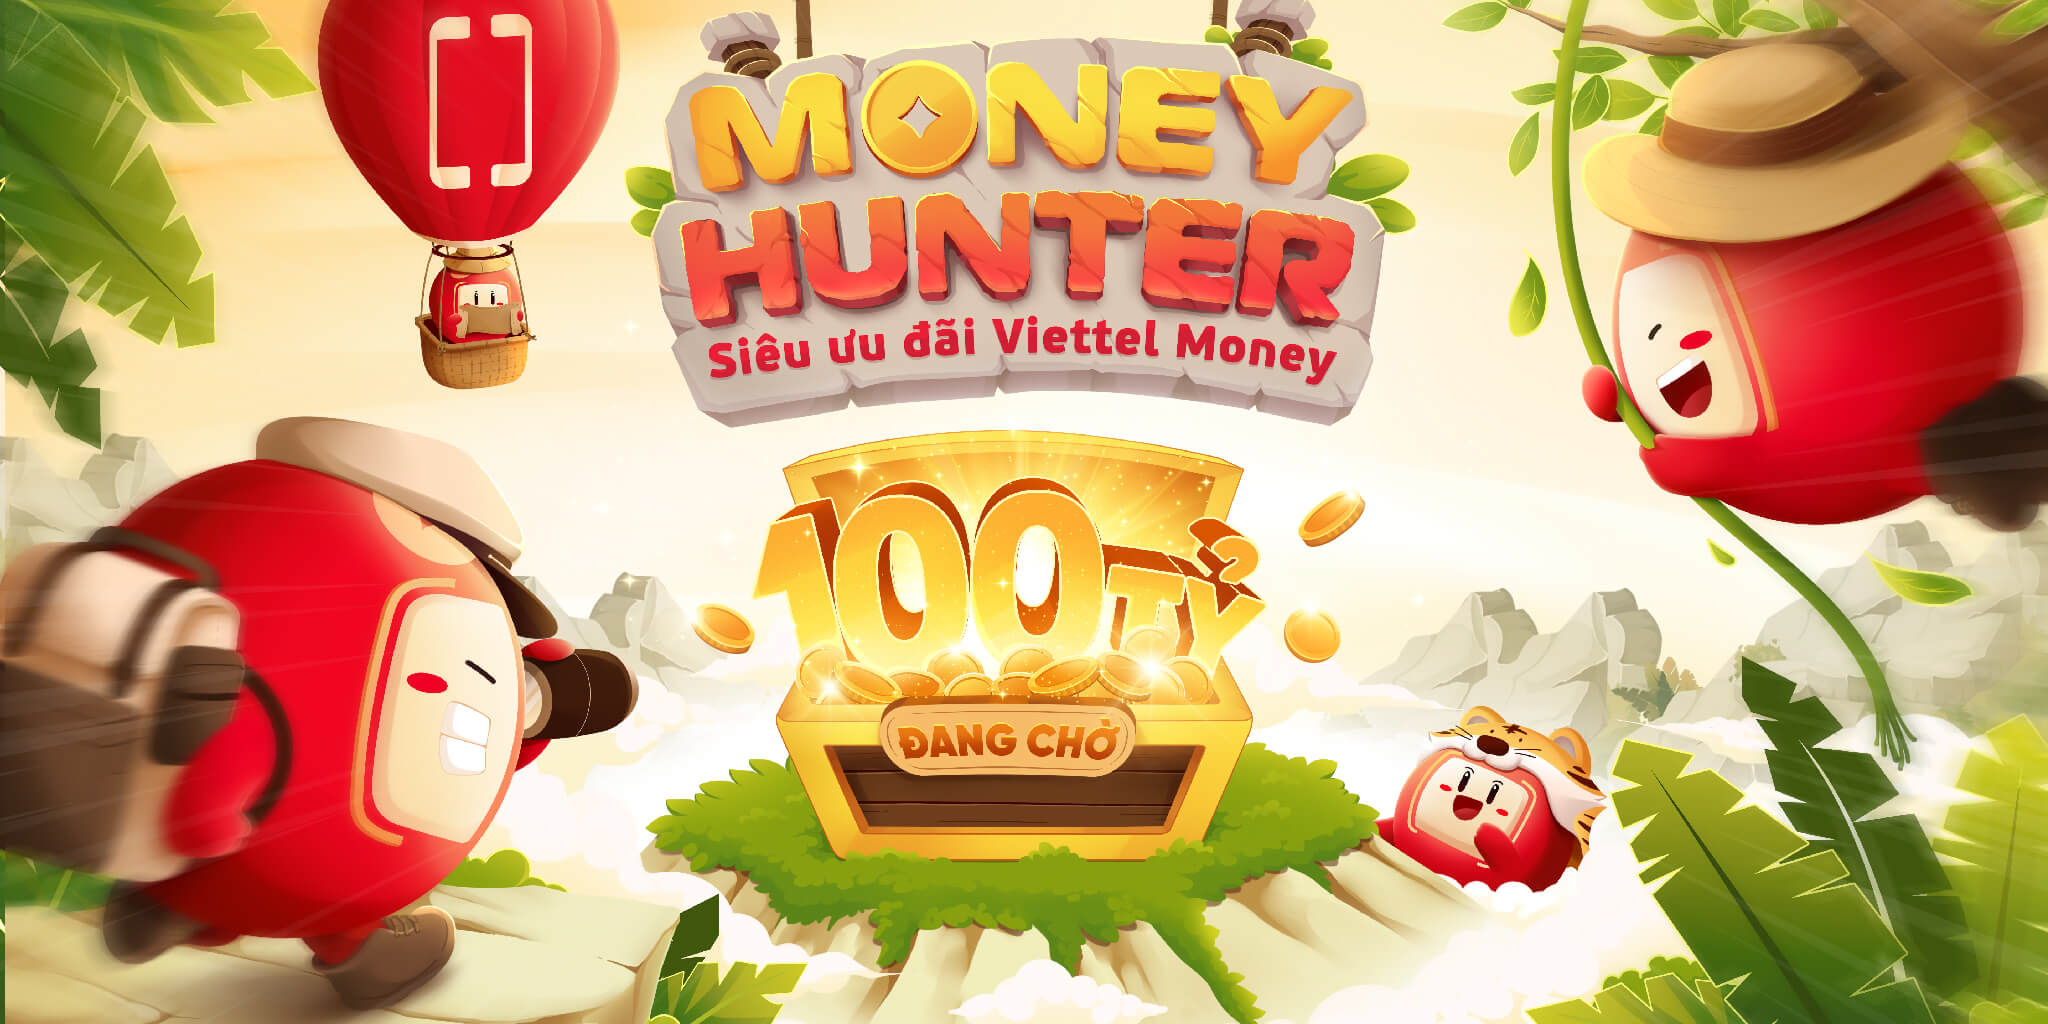 Săn thưởng thích mê, vui quên lối về với chuỗi chương trình “Money Hunter” tổng giá trị tới 100 tỷ trên Viettel Money